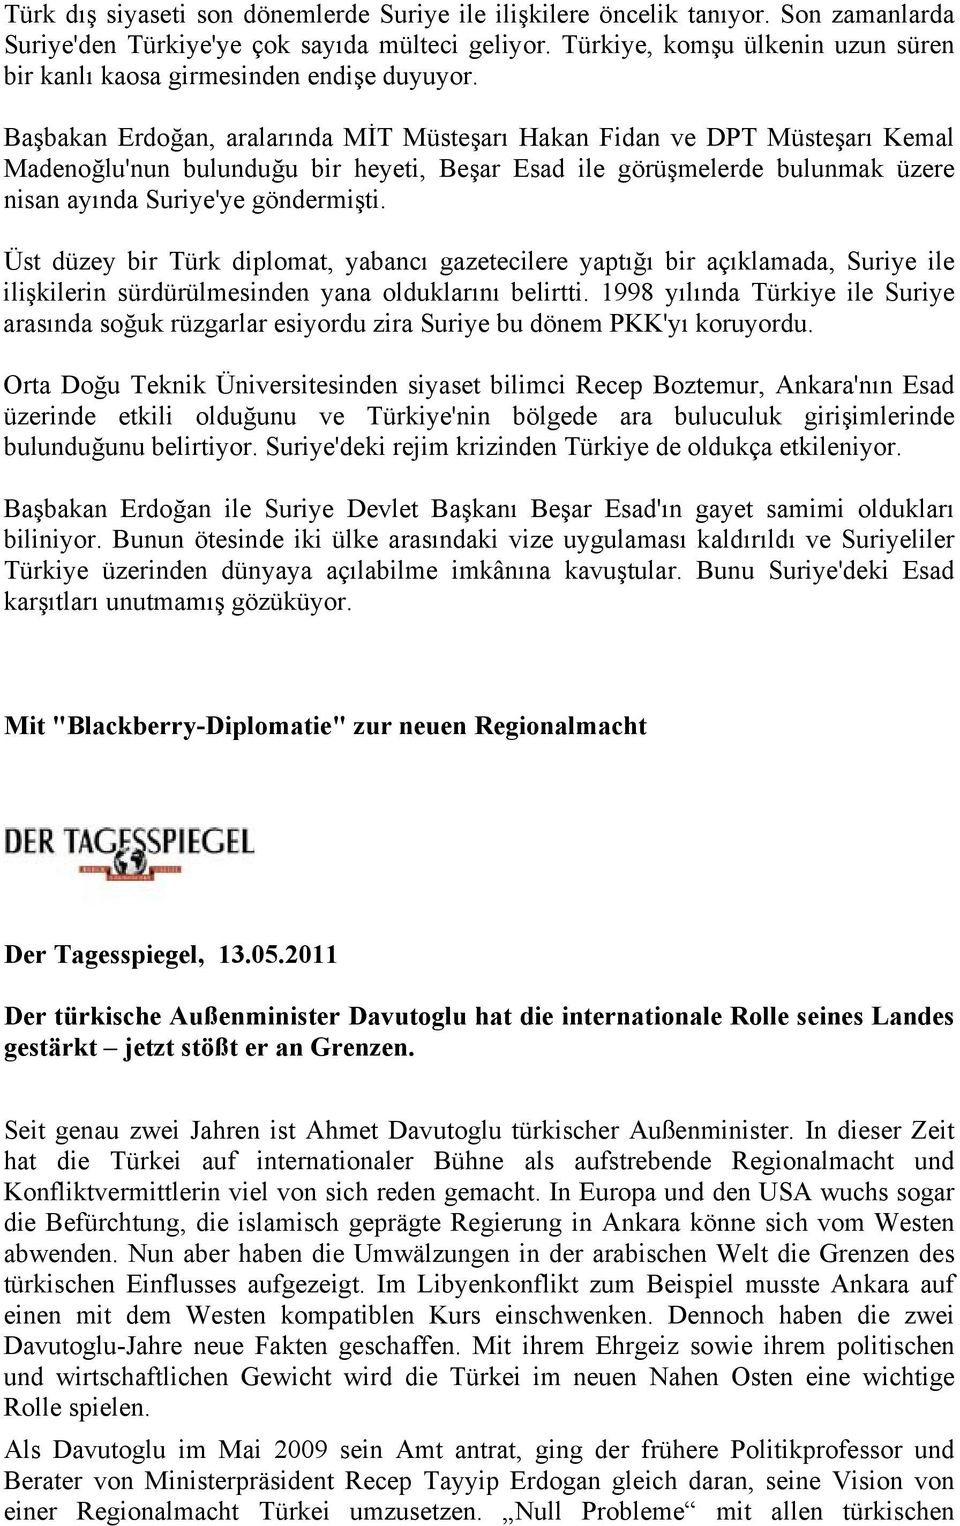 Başbakan Erdoğan, aralarında MİT Müsteşarı Hakan Fidan ve DPT Müsteşarı Kemal Madenoğlu'nun bulunduğu bir heyeti, Beşar Esad ile görüşmelerde bulunmak üzere nisan ayında Suriye'ye göndermişti.